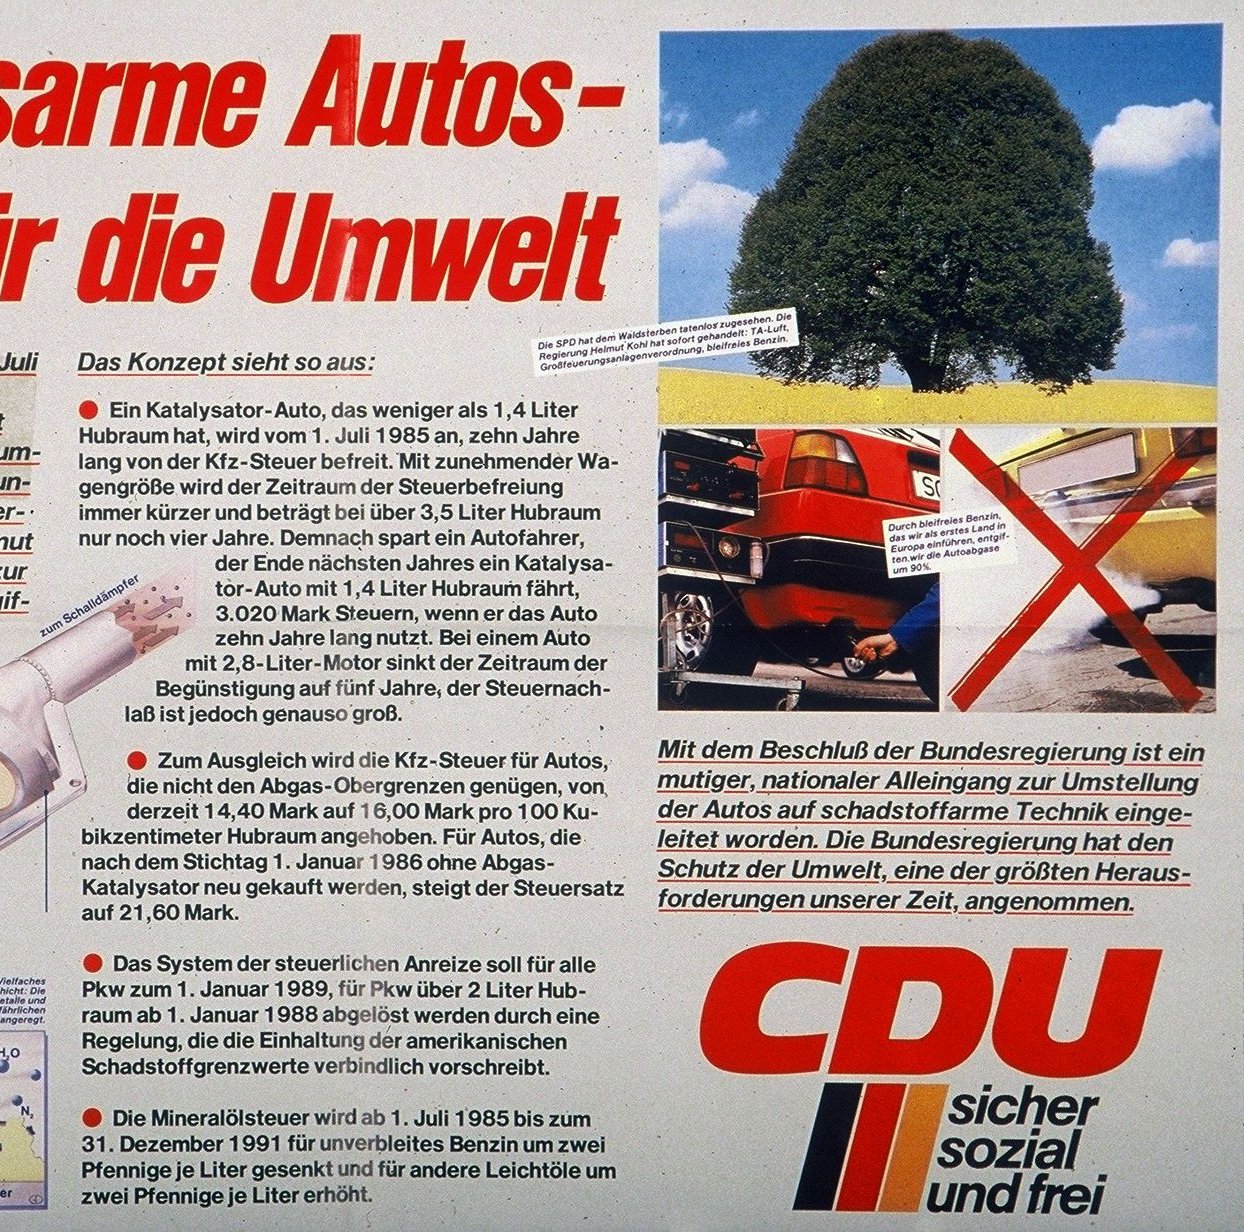 CDU Plakat mit der Aufschrift "Abgasarme Autos - ein Sieg für die Umwelt"